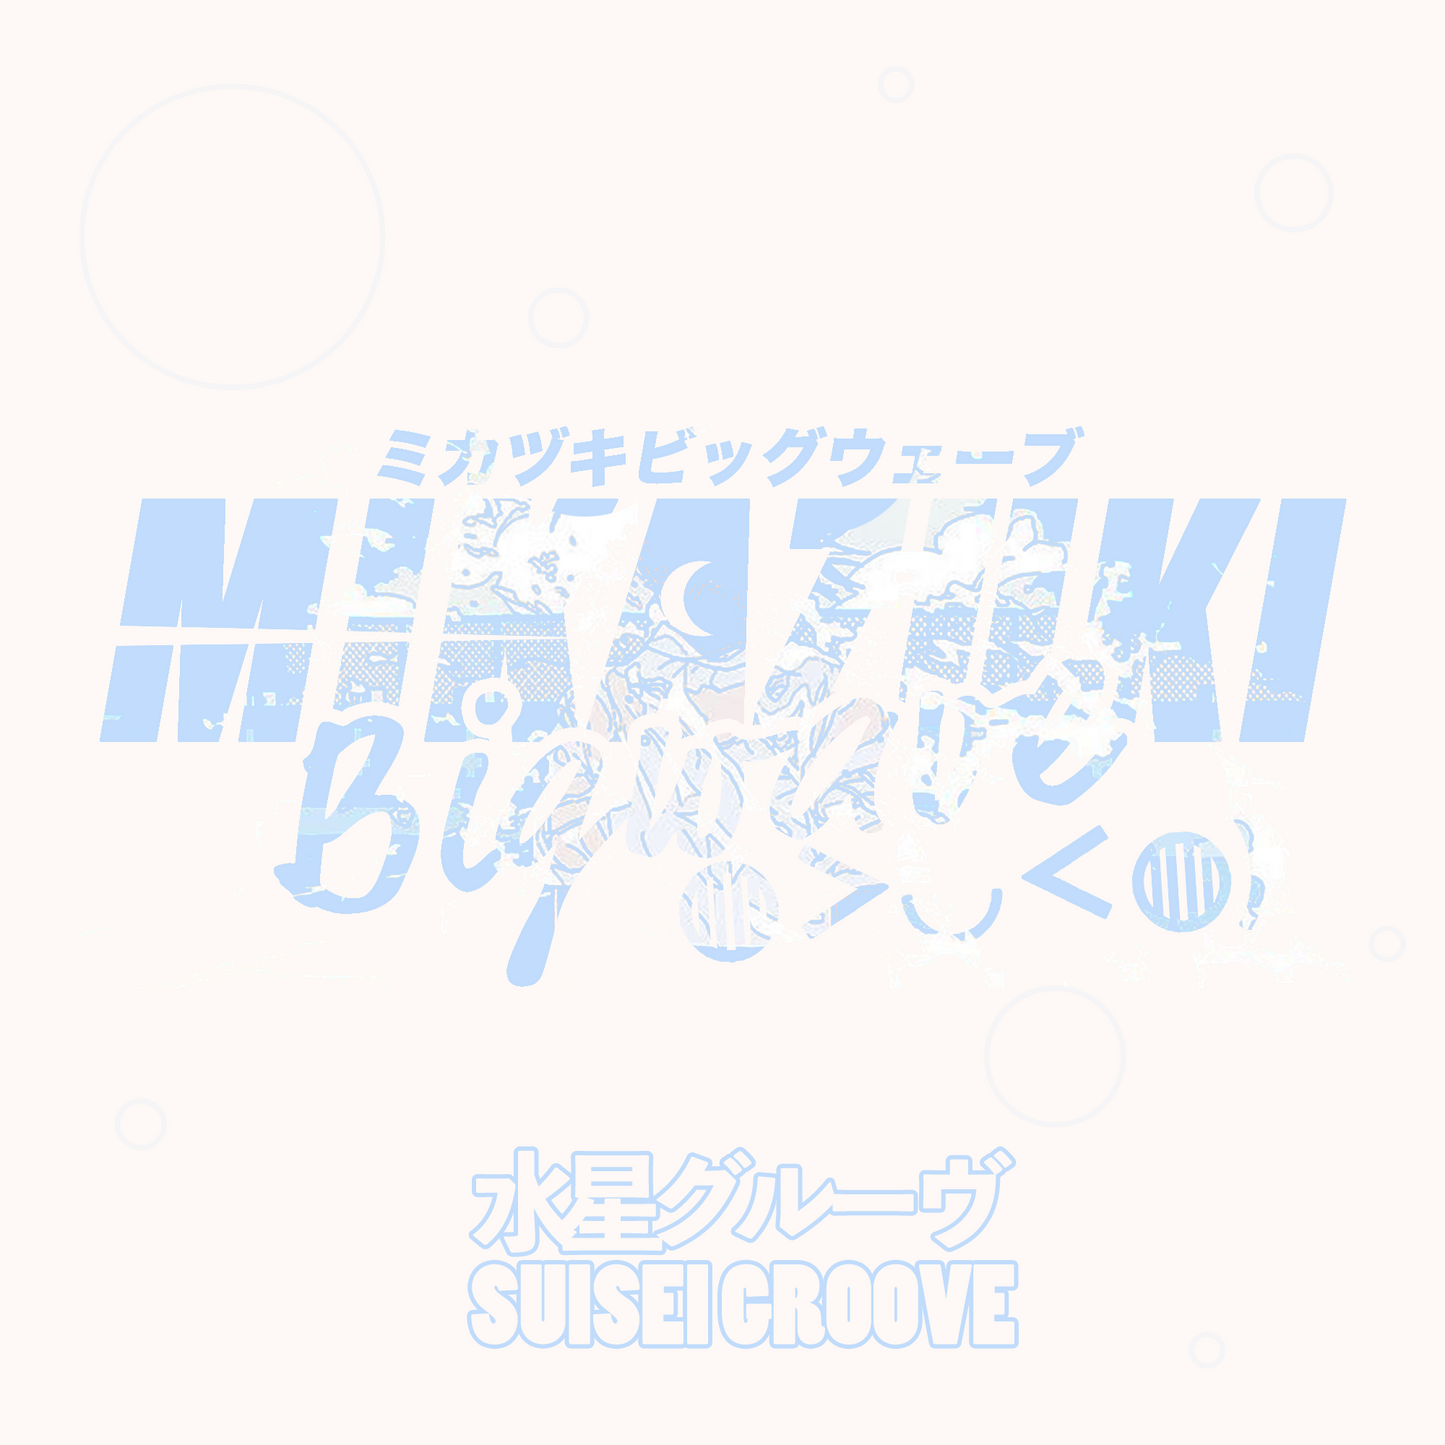 Suisei Groove - Single